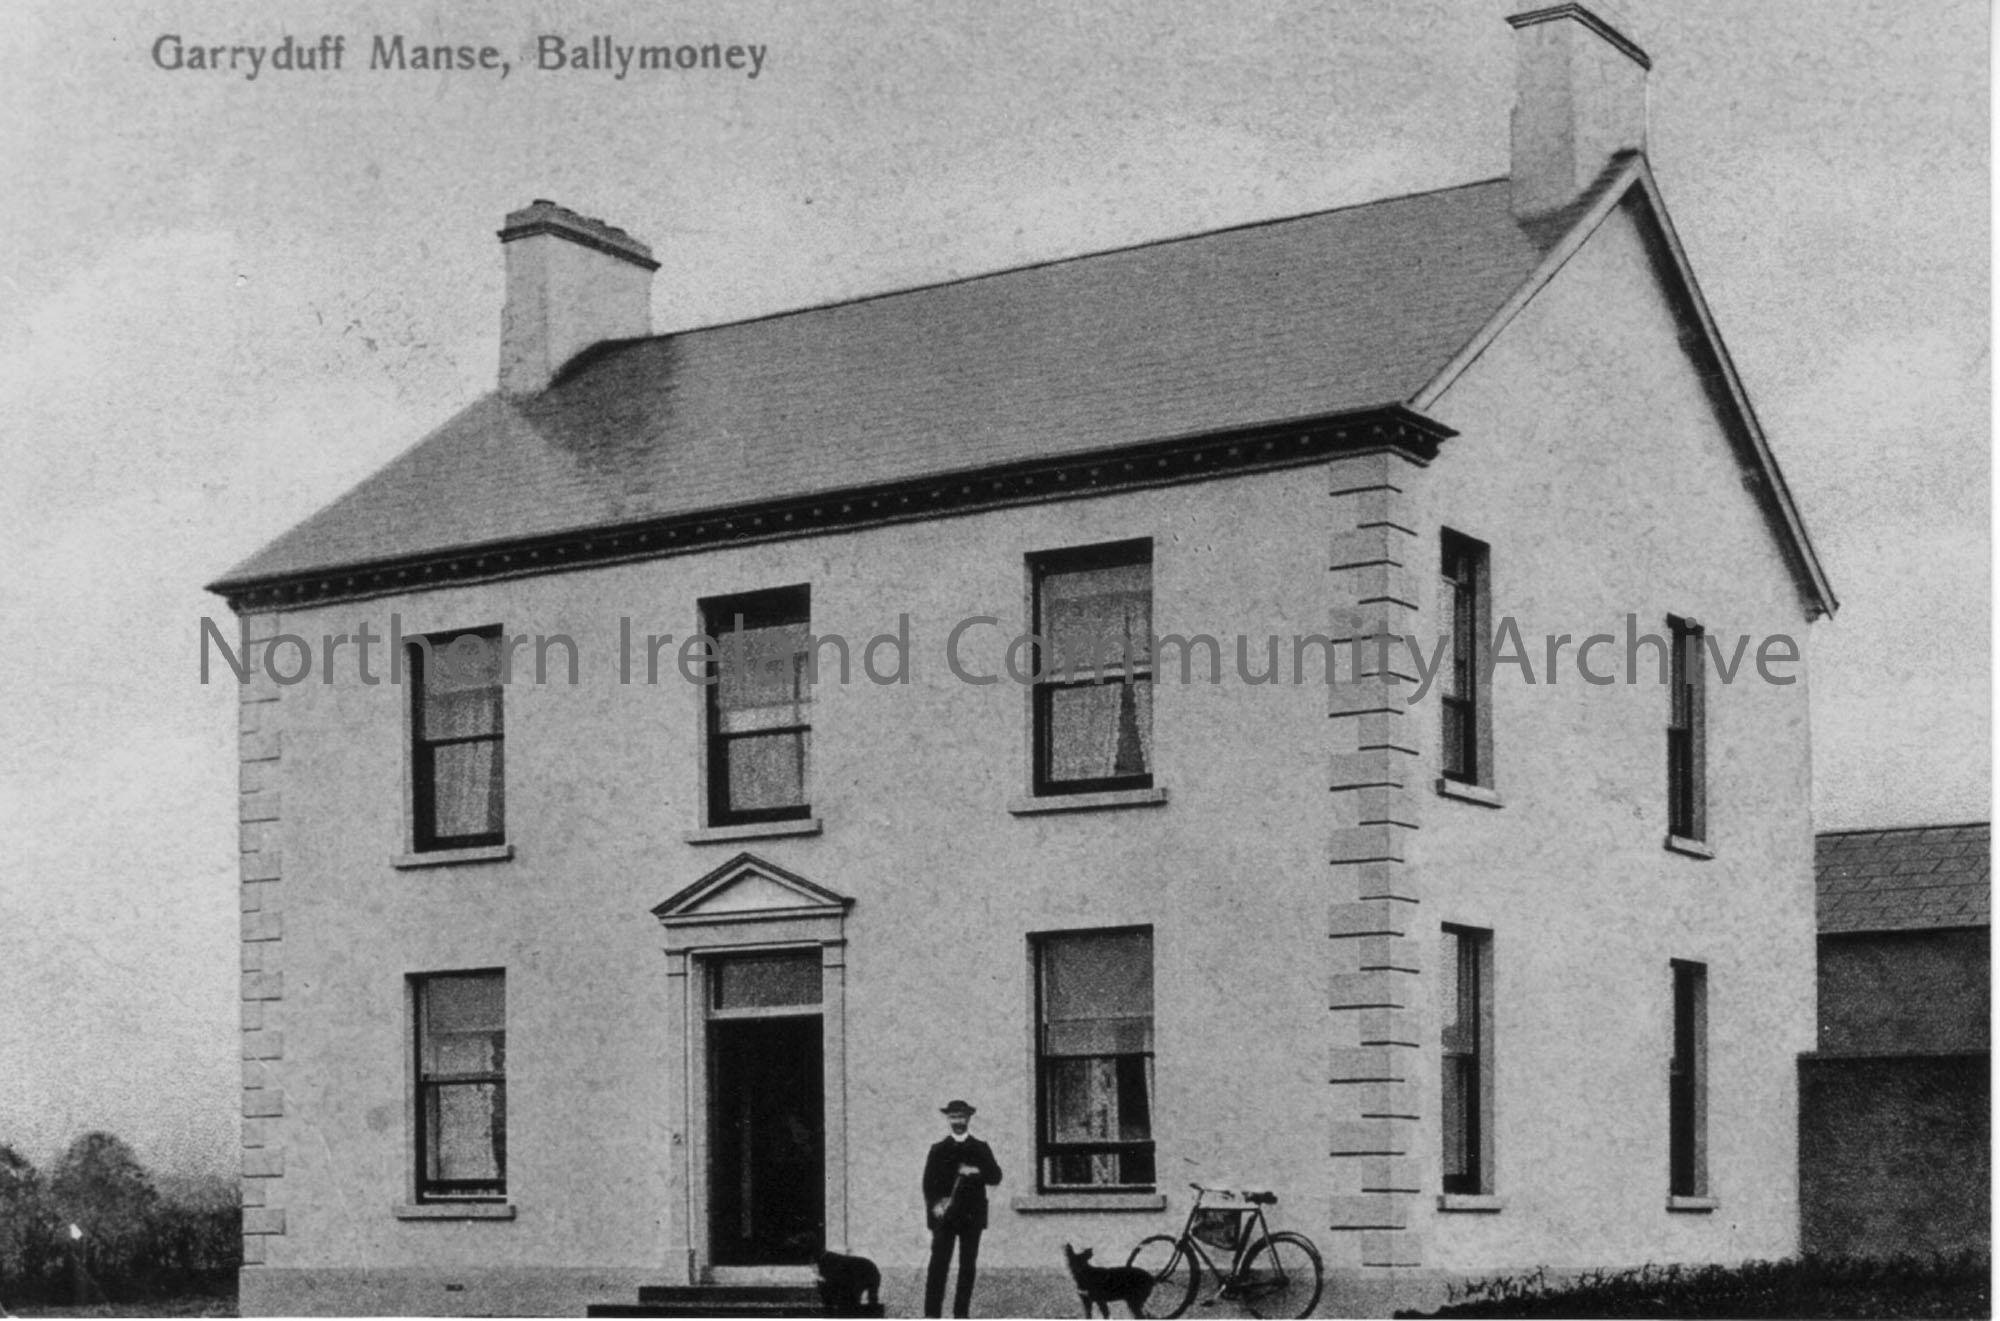 Garryduff Manse, Ballymoney